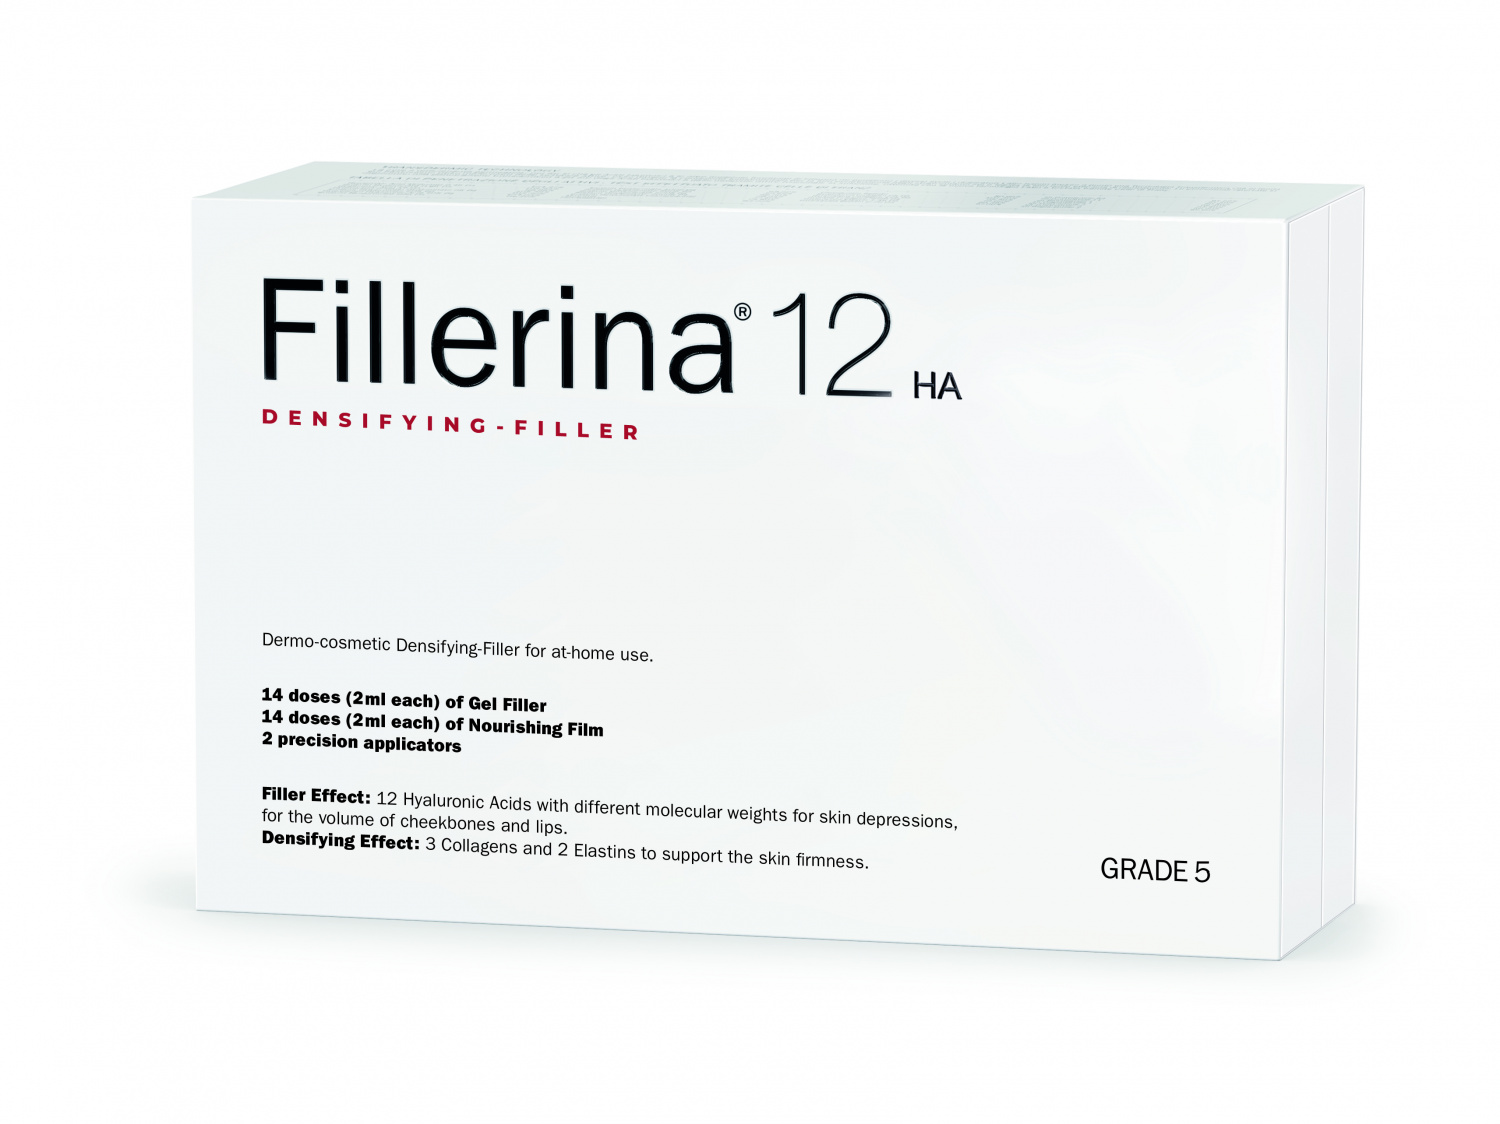 Fillerina 12HA Densifying-Filler Intensive Filler Treatment Grade 5 - интернет-магазин профессиональной косметики Spadream, изображение 37556